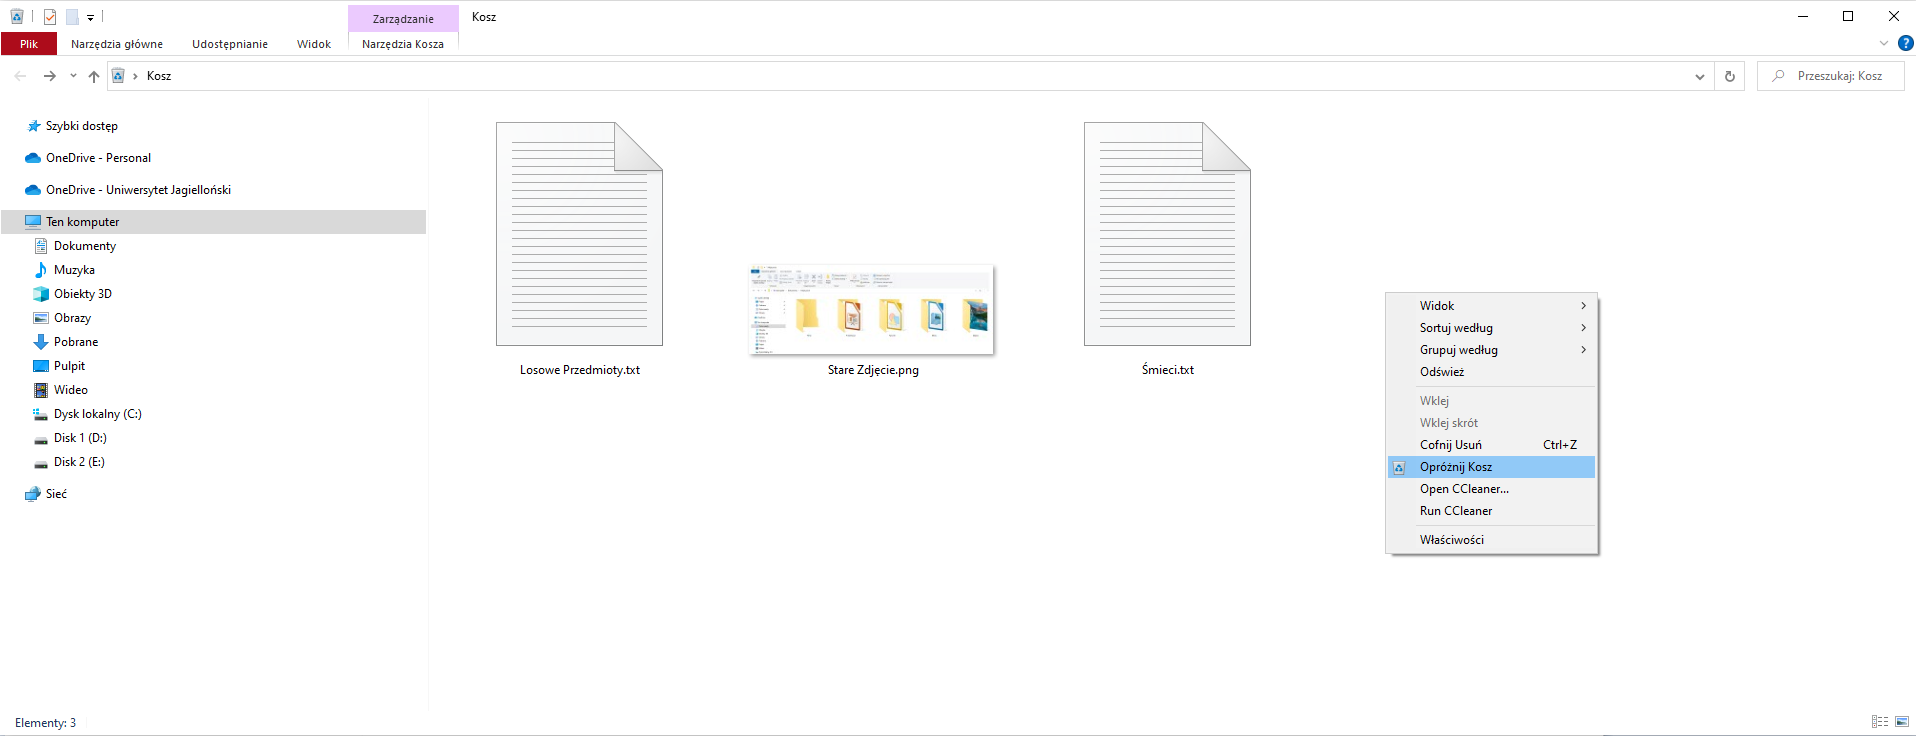 Zrzut ekranu Eksploratora plików z otwartym folderem koszem. W prawym górnym rogu znajduje się nazwa bieżącego otwartego folderu "Moje prace", poniżej znajdują się zakładki "Pliki", "Narzędzia główne", "Udostępnianie", "Widok" oraz dwie zakładki zarządzania "Narzędzia Kosza", "Narzędzia obrazów". W drzewie folderów po lewej stronie znajdują się "Szybki dostęp",  "OneDrive - Personal", "OneDrive - Uniwersytet Jagielloński" oraz "Ten komputer" - "Dokumenty", "Muzyka", "Obiekty 3D", "Obrazy", "Pulpit", "Wideo", "Dysk lokalny (C:)", "Disk 1 (D:), "Disk 2 (E:)", "Sieć". W koszu znajdują się pliki "Losowe Przedmioty.txt", "Śmieci.txt" oraz "Stare Zdjęcie.jpg". W wyświetlonym menu kontekstowym dostępne są opcje "Widok", "Sortuj według", "Grupuj według", "Odśwież", "Wklej", "Wklej skrót", "Cofnij Usuń", "Opróżnij Kosz" (podświetlony), "Open CCleaner", "Run CCleaner",  "Właściowści".